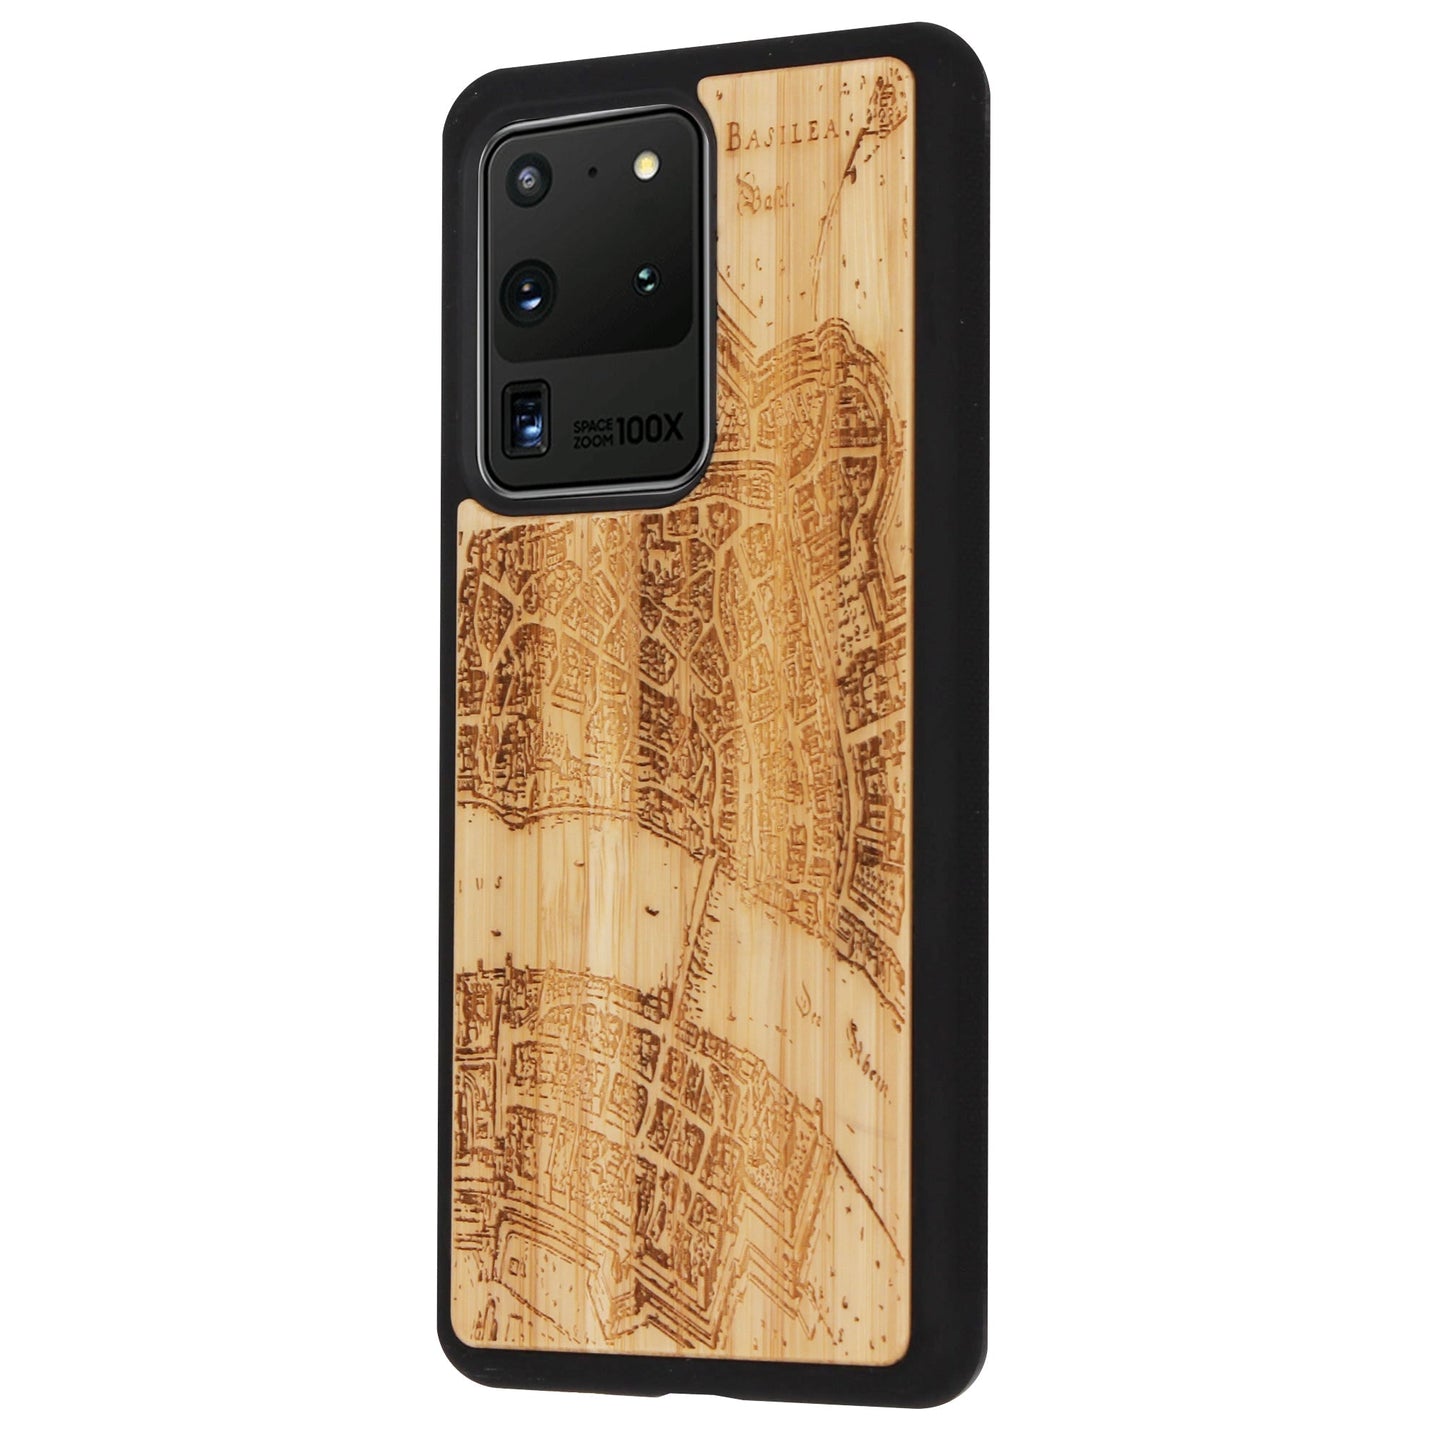 Coque en bambou Basel Merian Eden pour Samsung Galaxy S20 Ultra